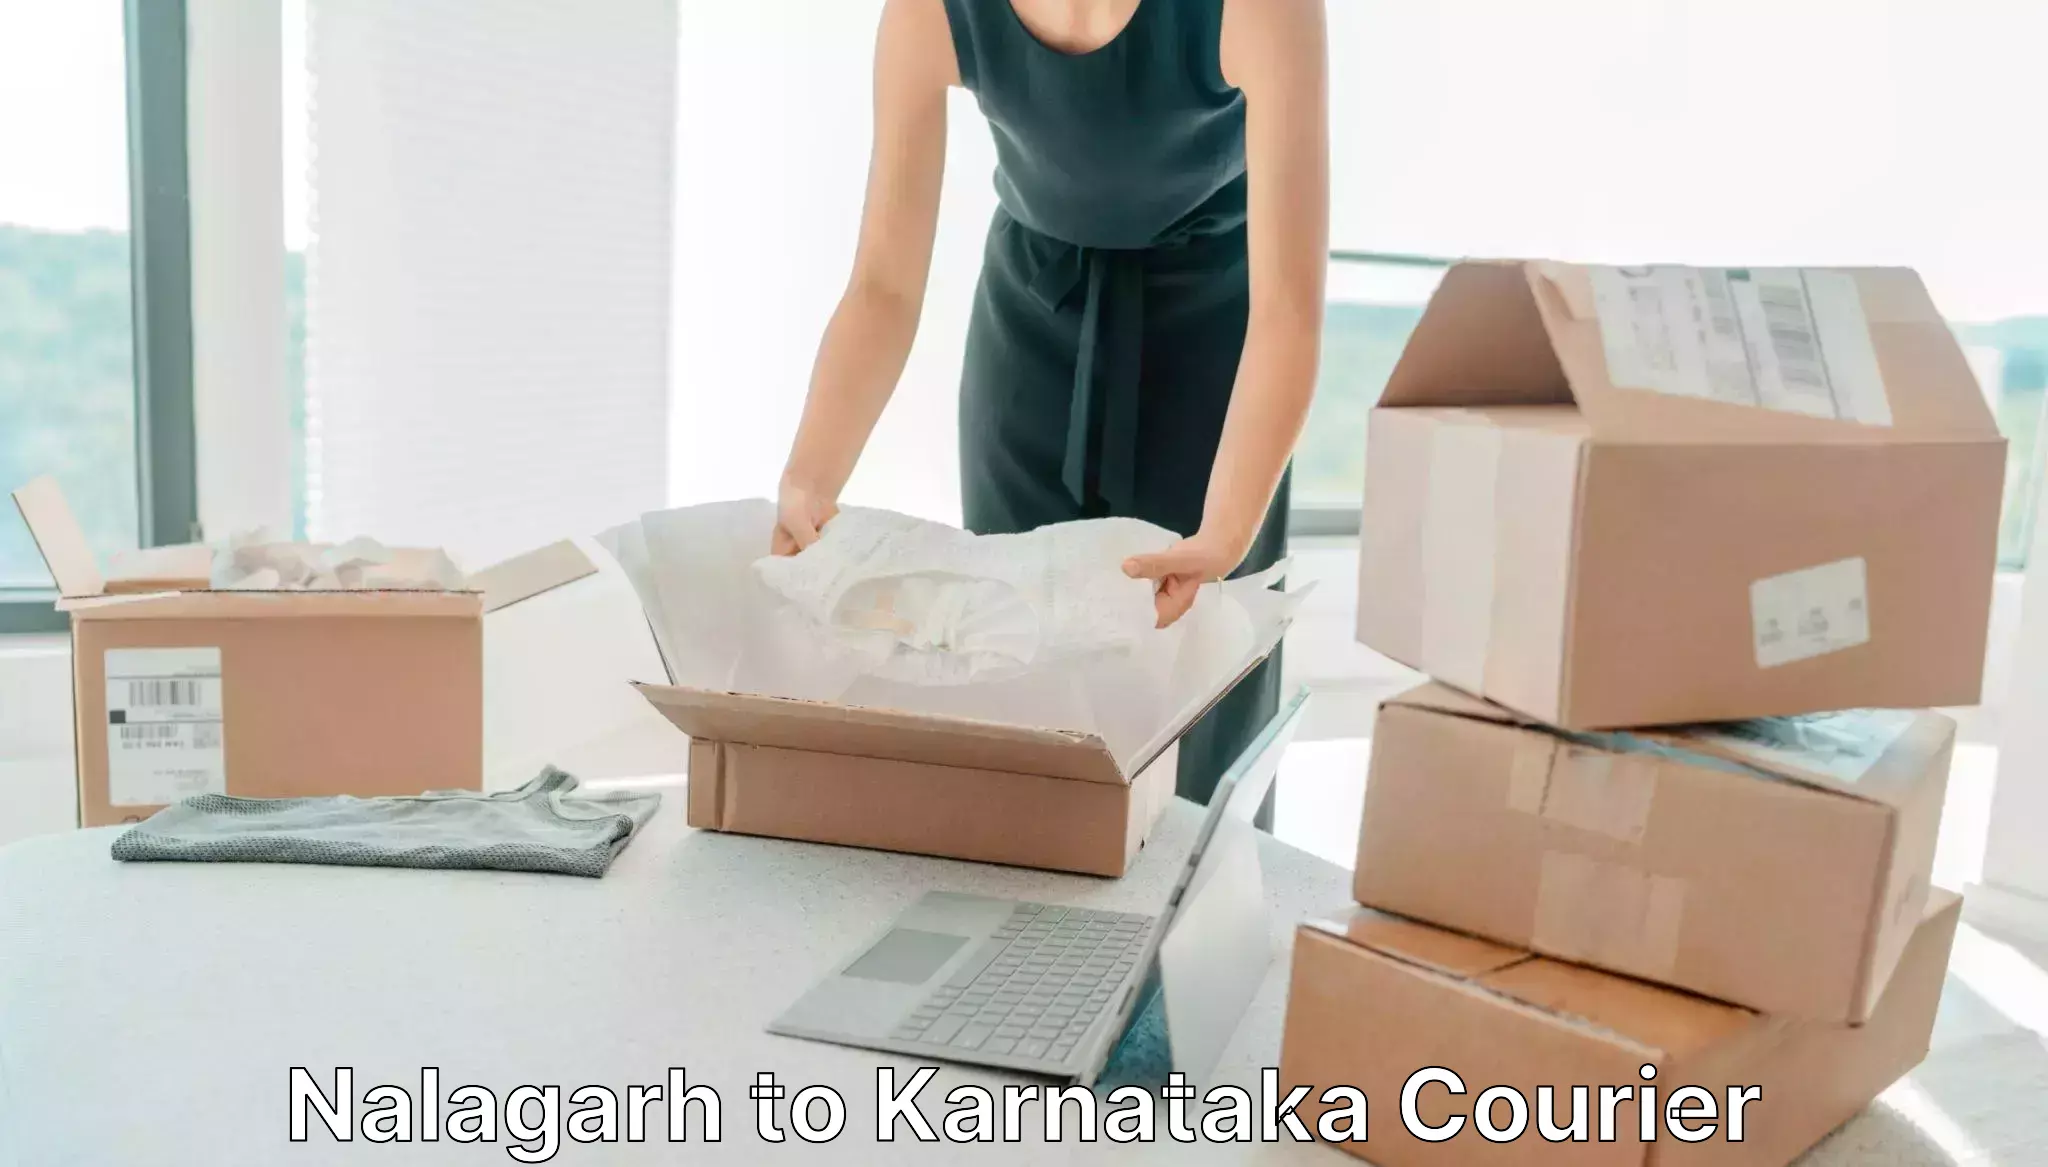 Same-day delivery options Nalagarh to Karnataka